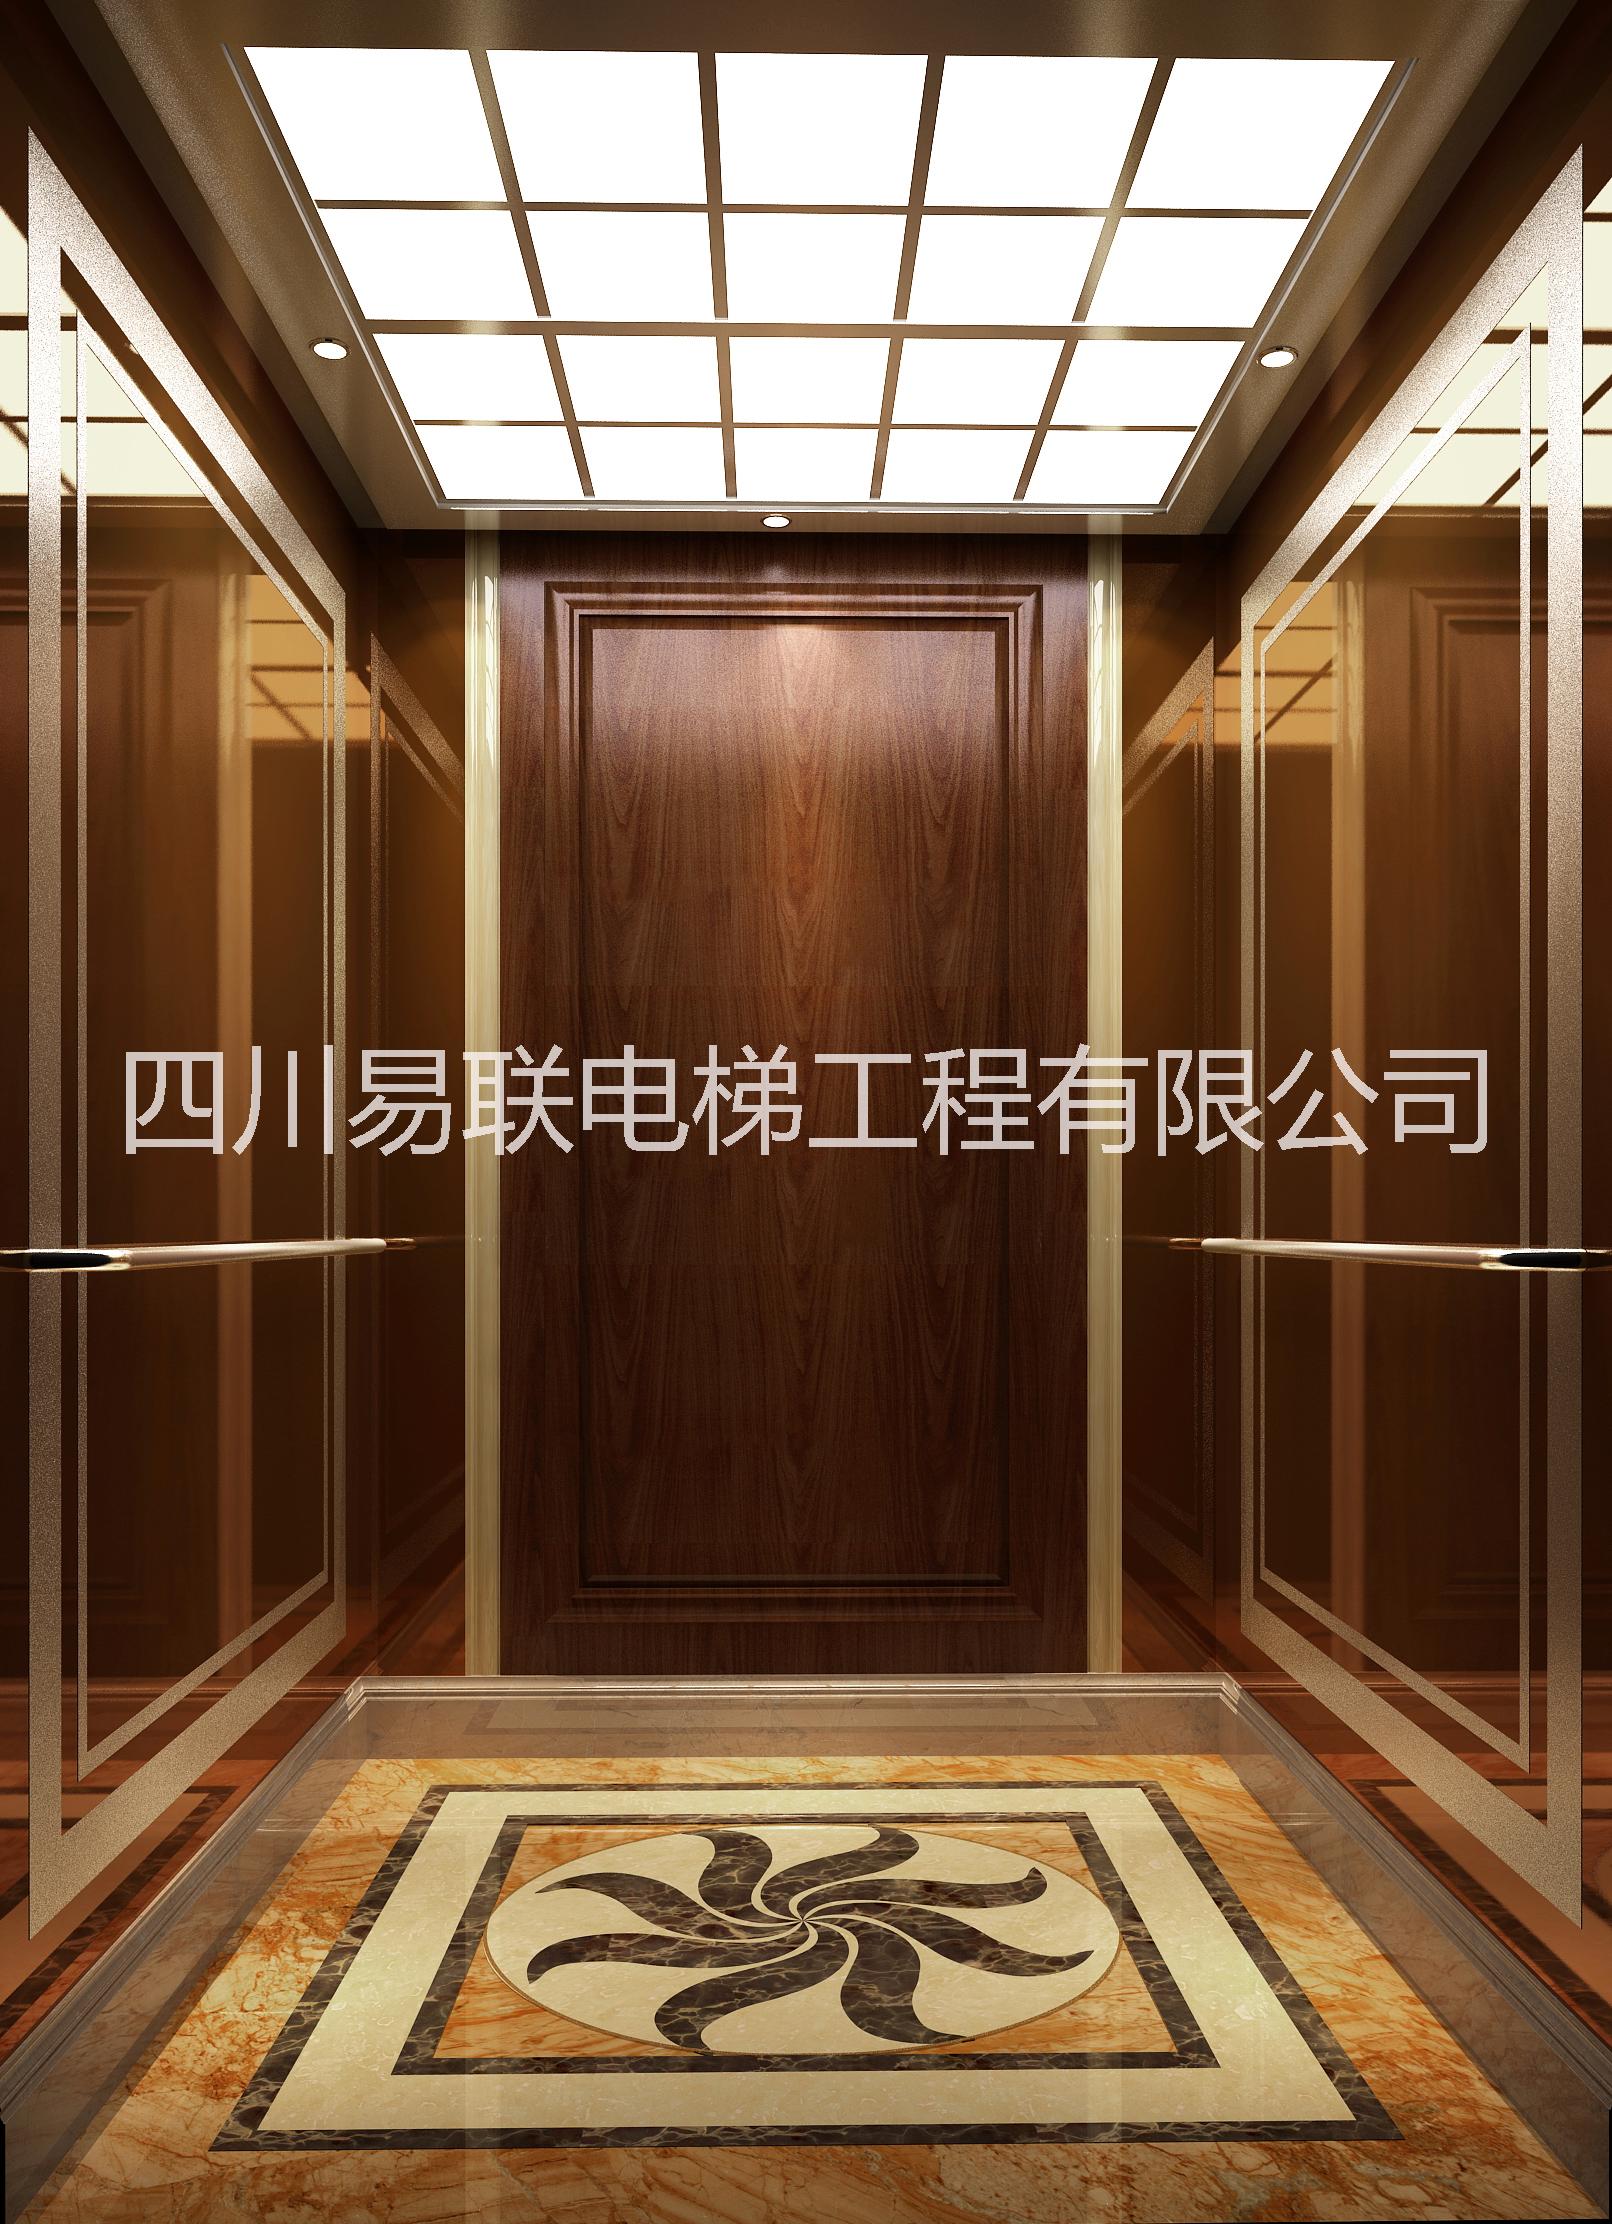 四川成都易联品牌专业自动扶梯装潢自动扶梯装饰扶梯装修图片